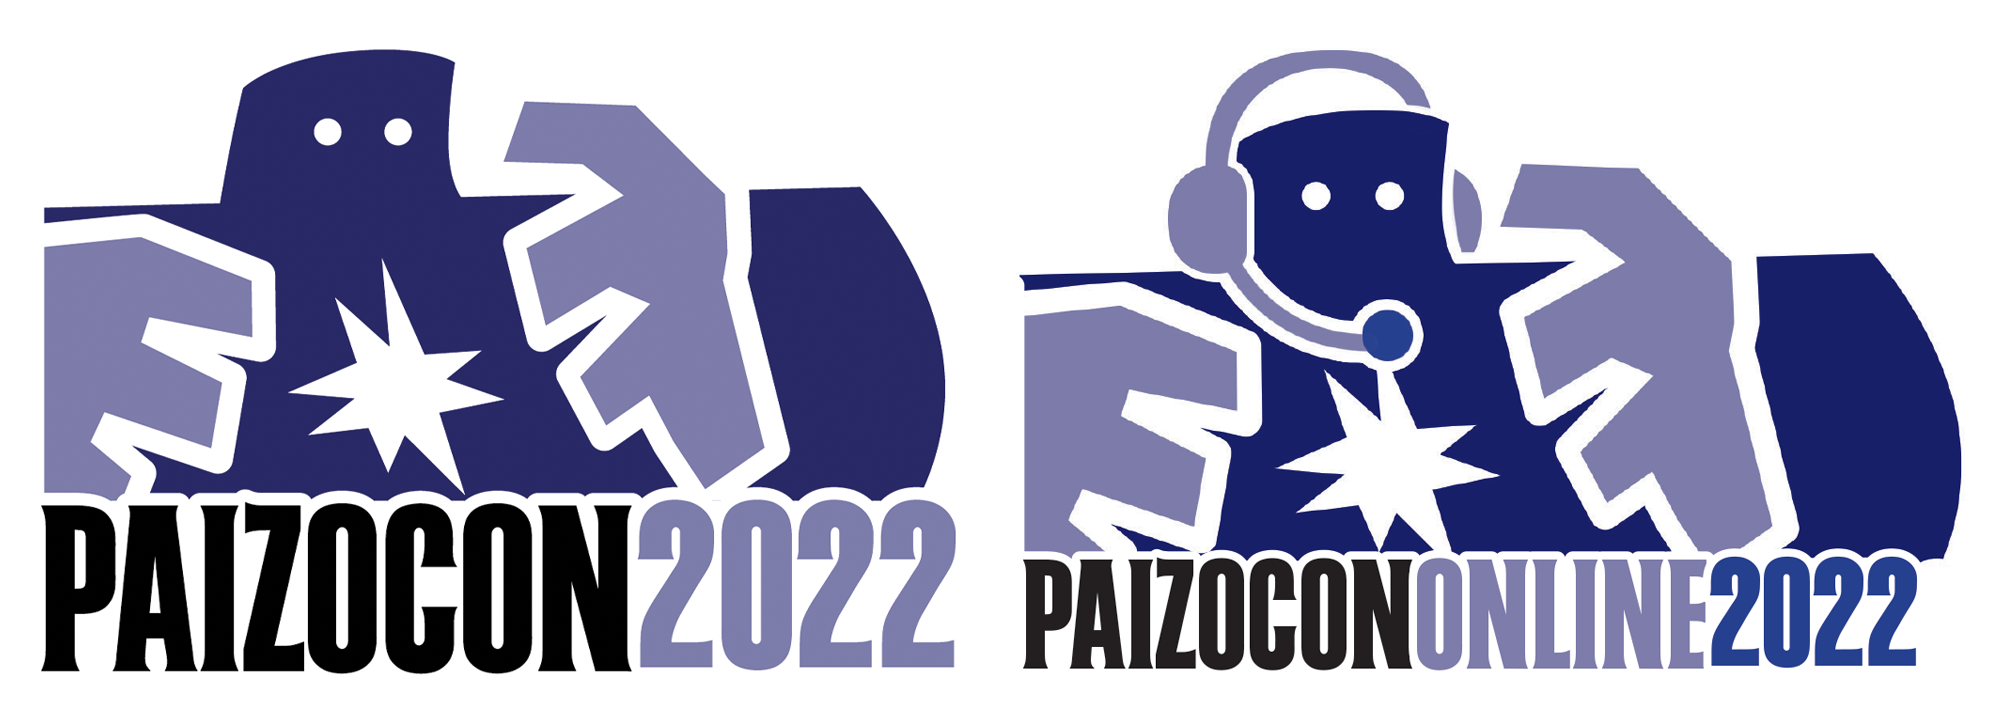 PaizoCon 2022 and PaizoCon Online 2022